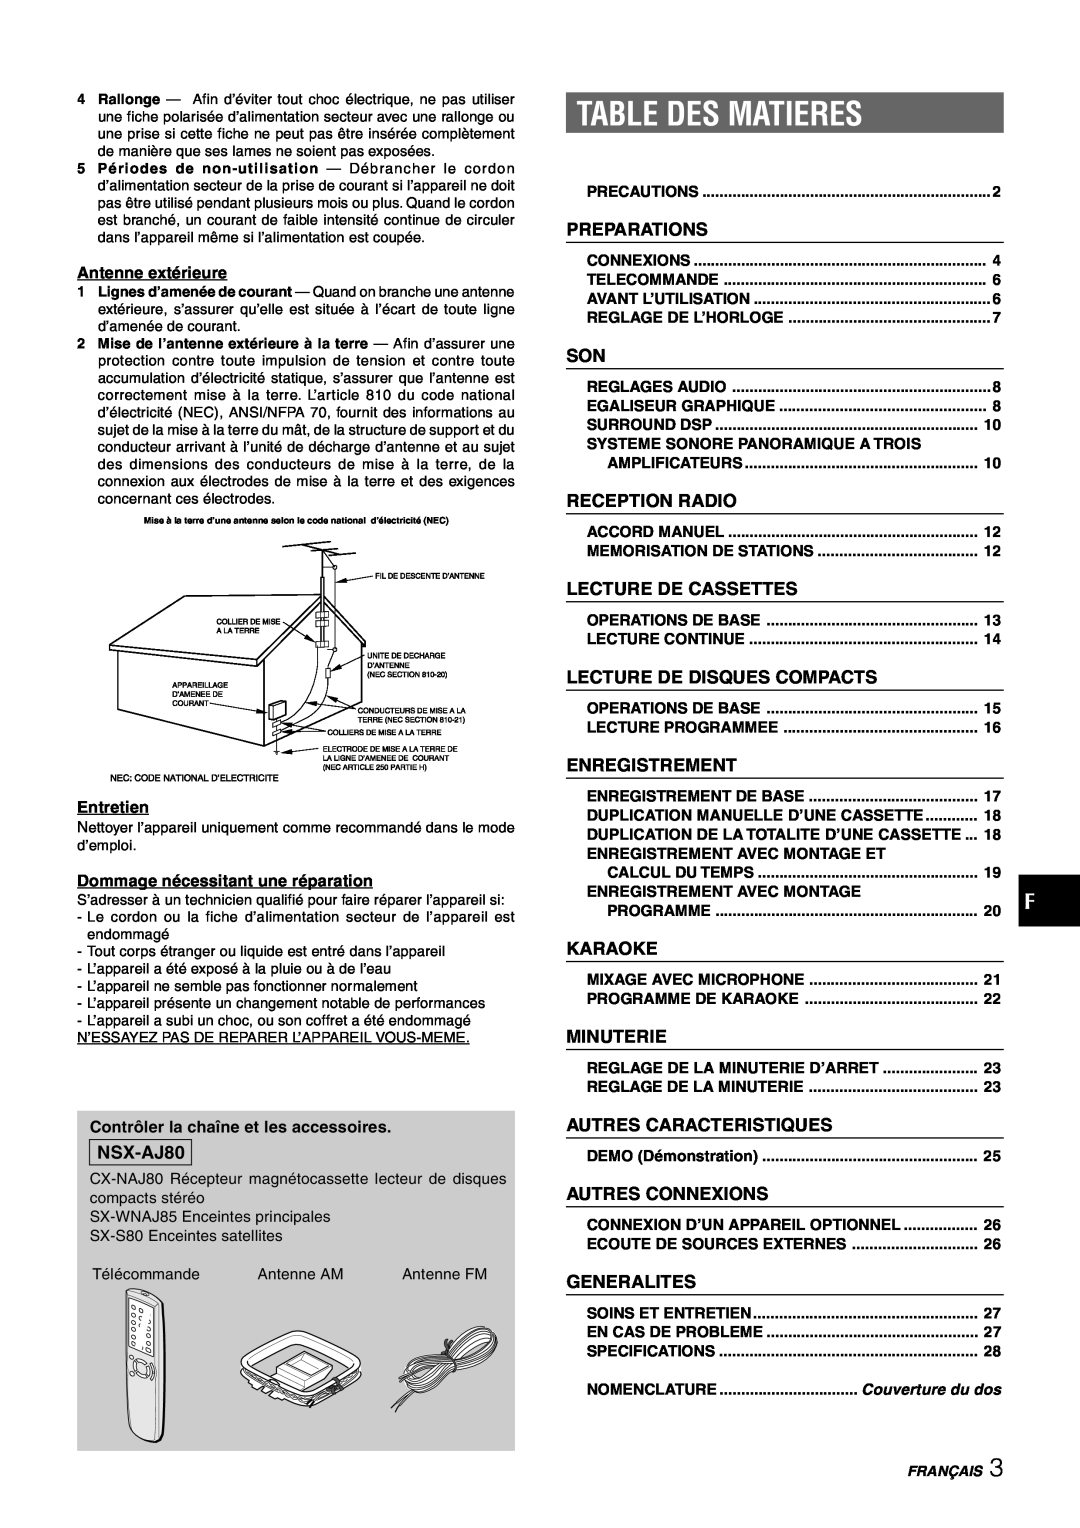 Sony NSX-AJ80 manual Table Des Matieres, Preparations, Reception Radio, Lecture De Cassettes, Lecture De Disques Compacts 